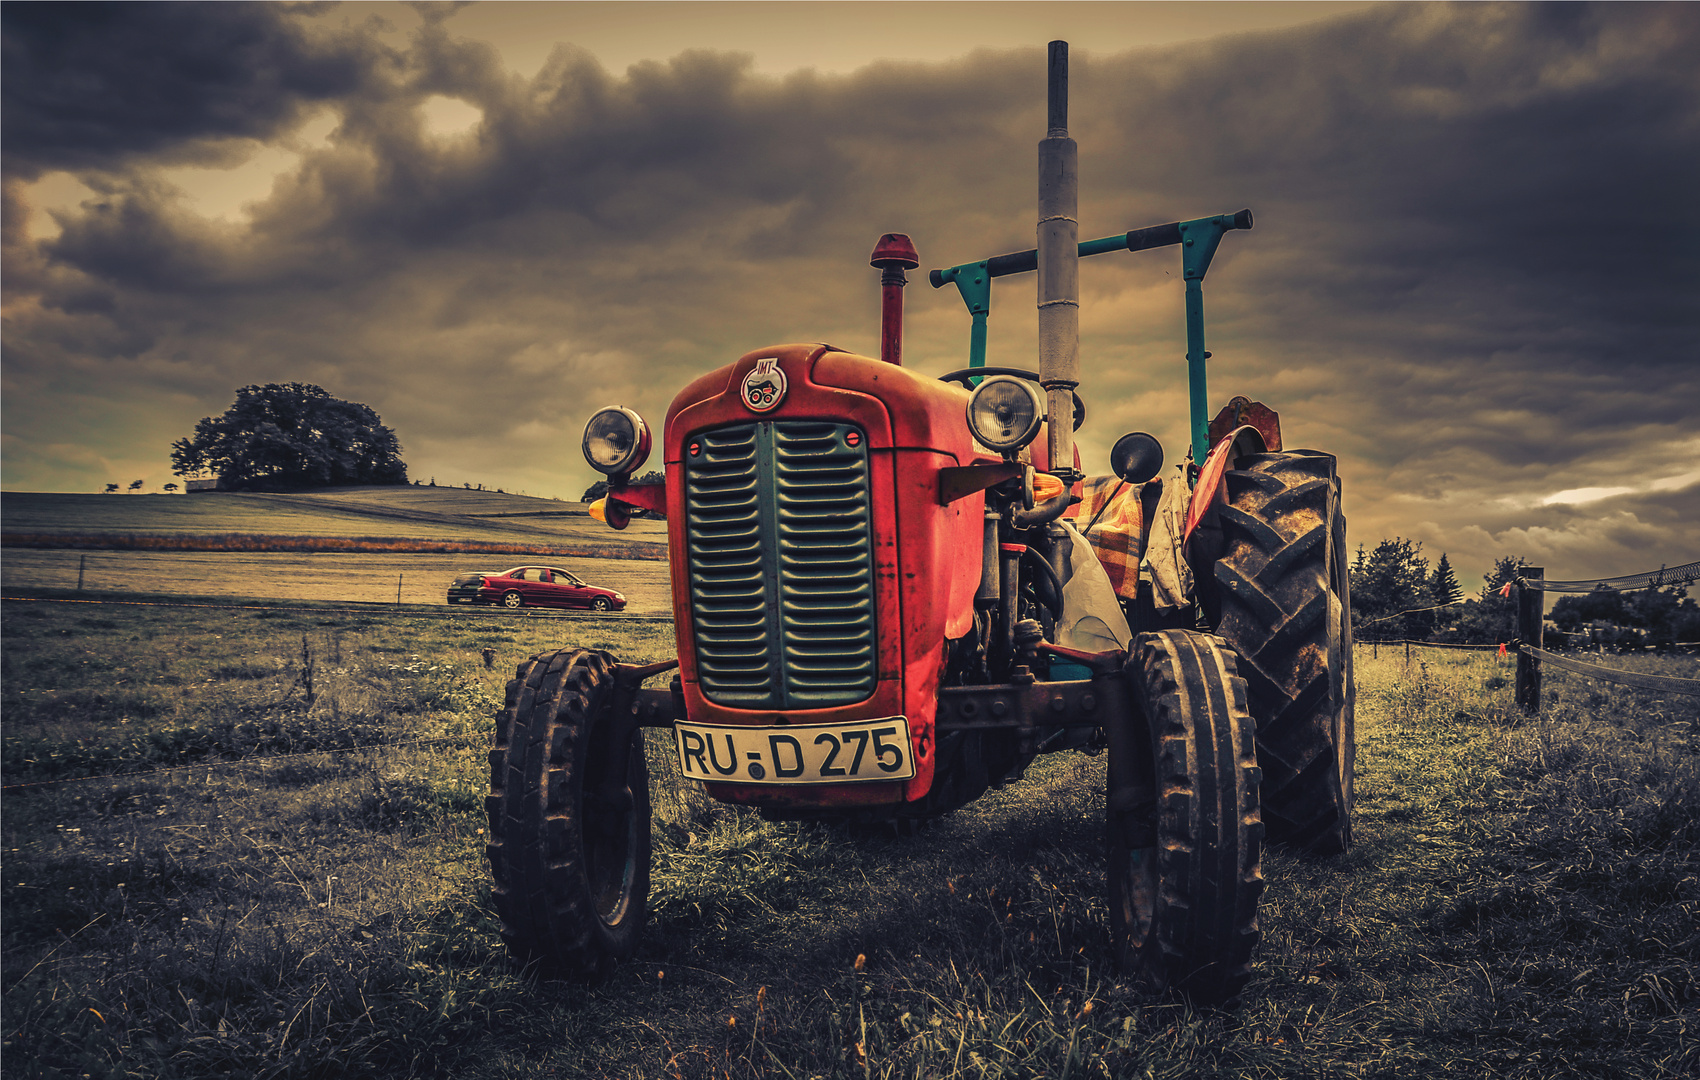 Traktor auf dem Feld